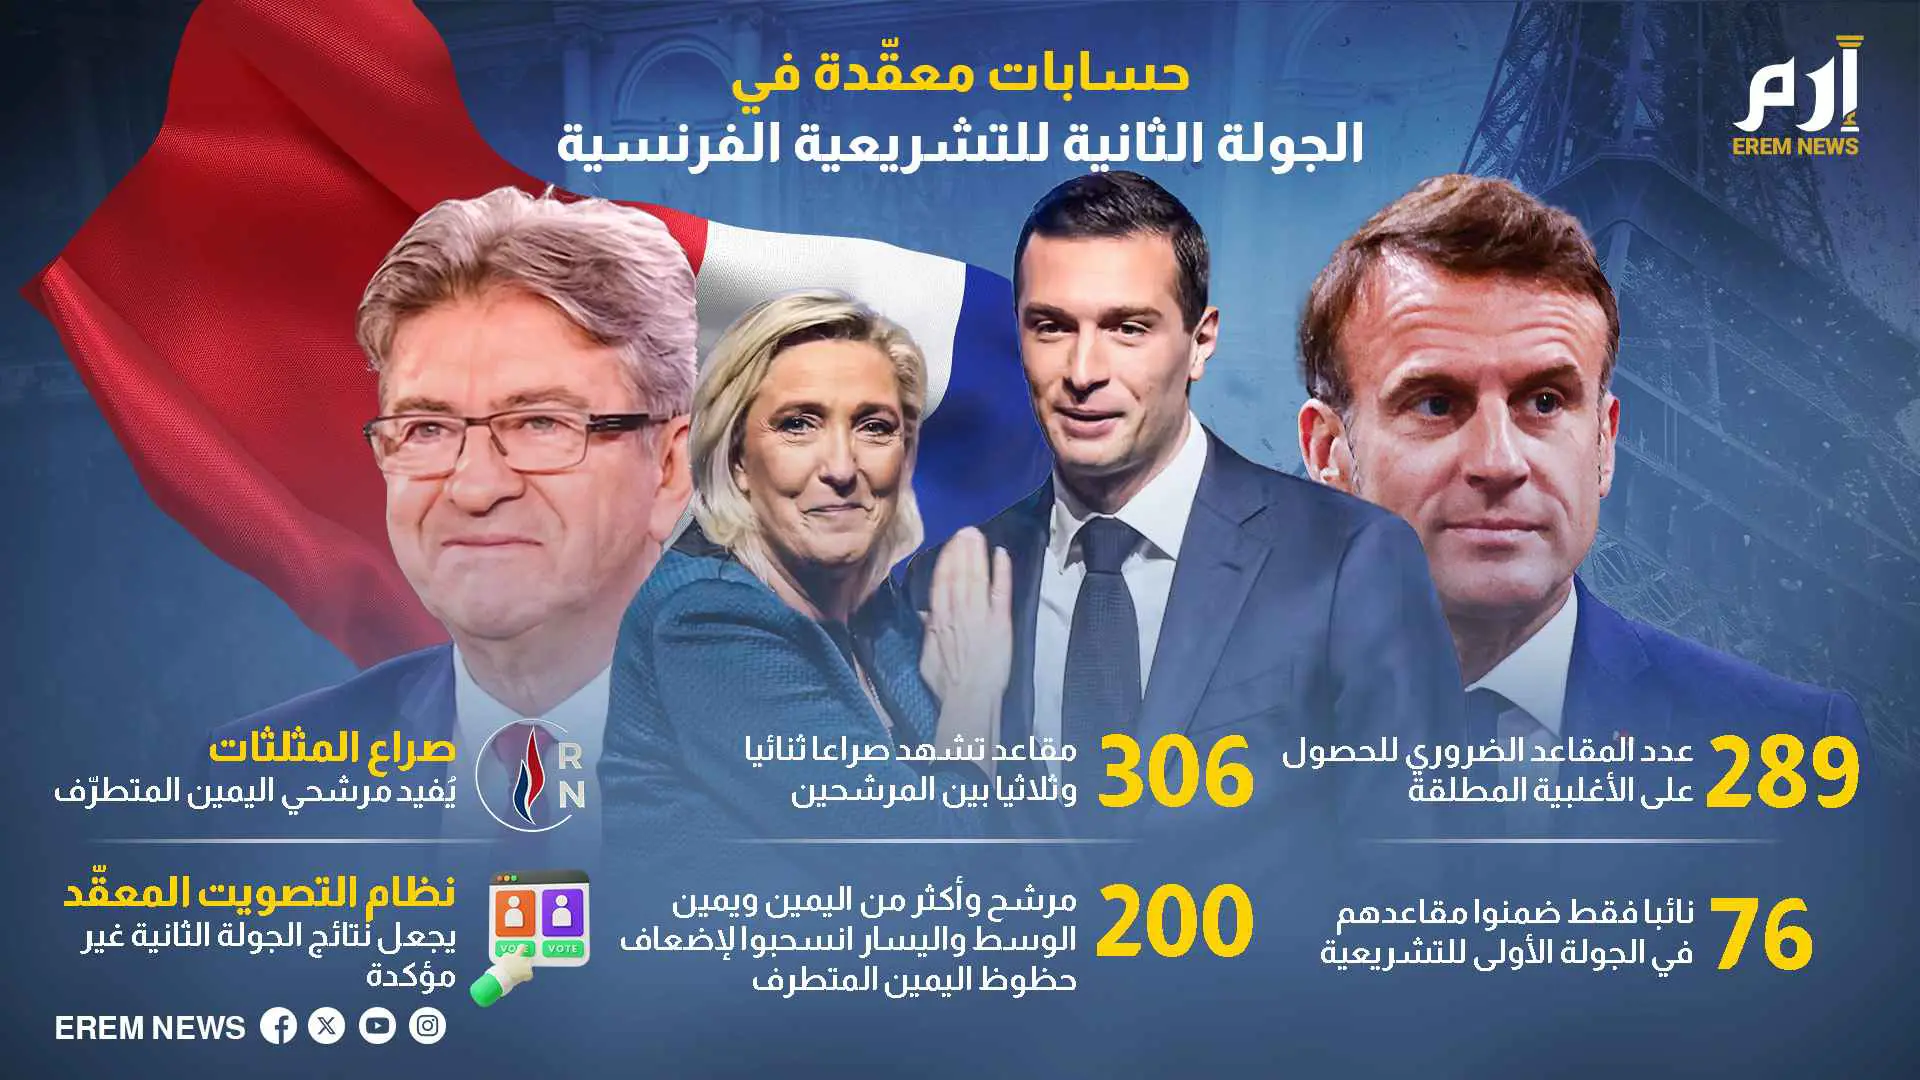 حسابات معقّدة في الجولة الثانية للتشريعية الفرنسية